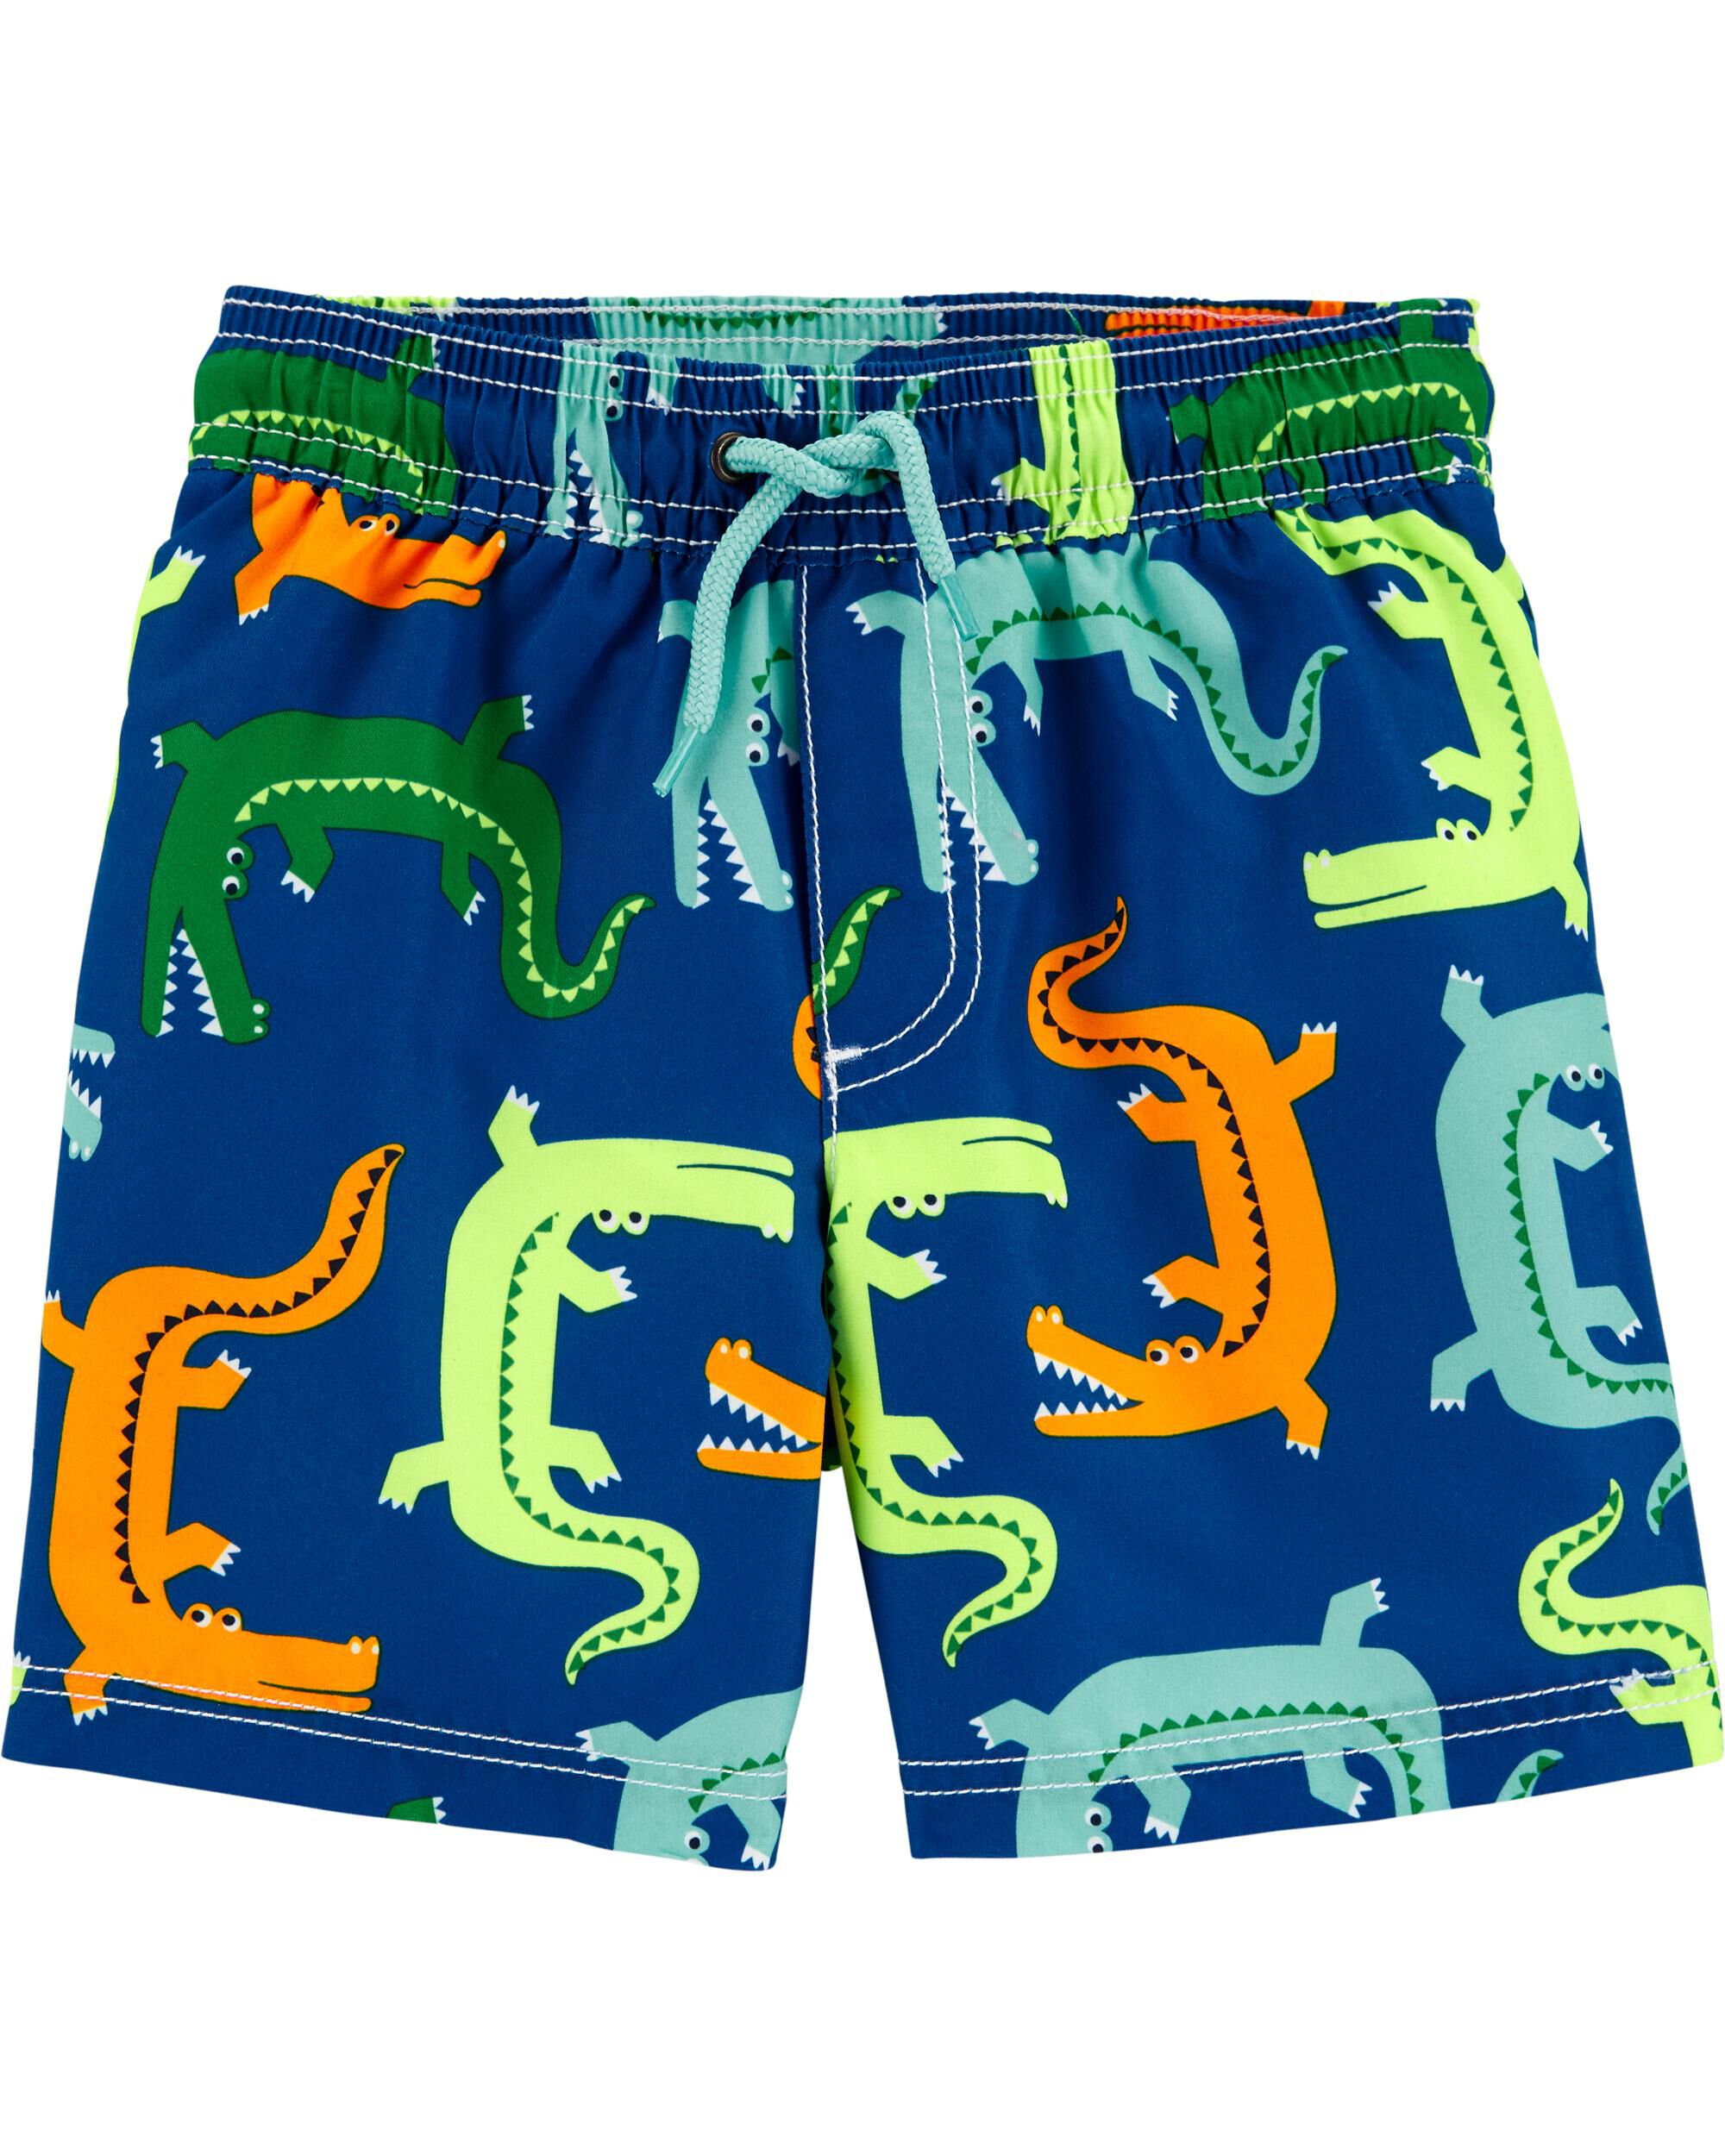 Boys Novelty Shark Crocodile Swim Shorts Baby Boy Swimwear Swimming Trunks Gift 